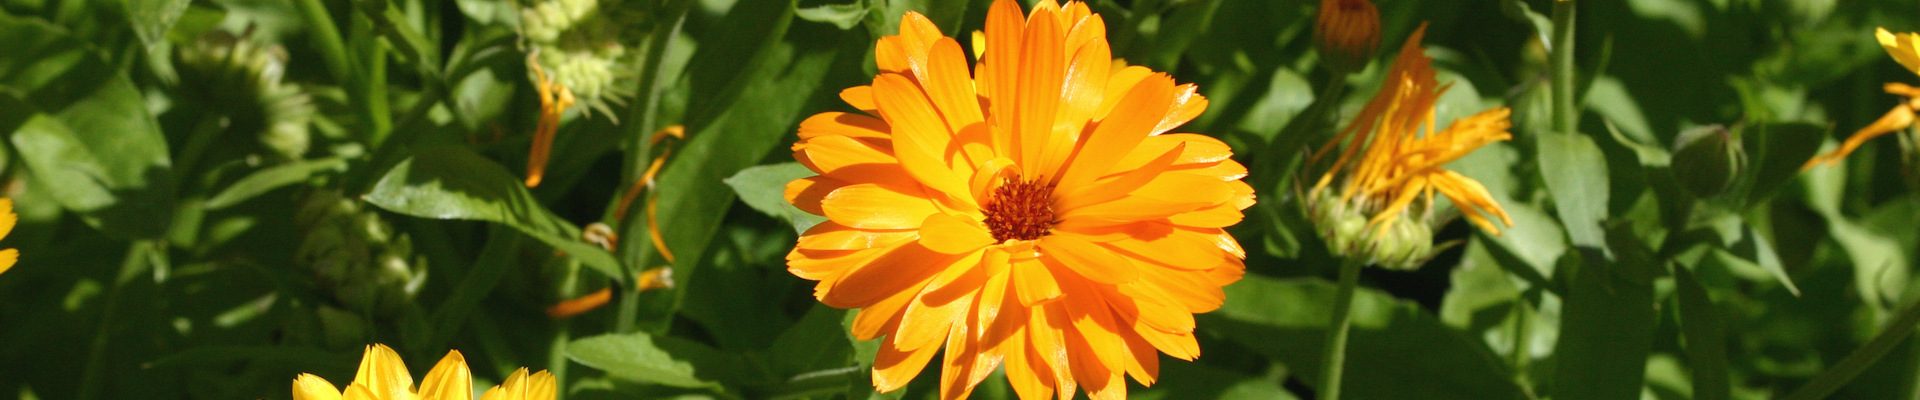 Ringelblumen blühen ab Juni in vielen Bauerngärten in Varel und Friesland